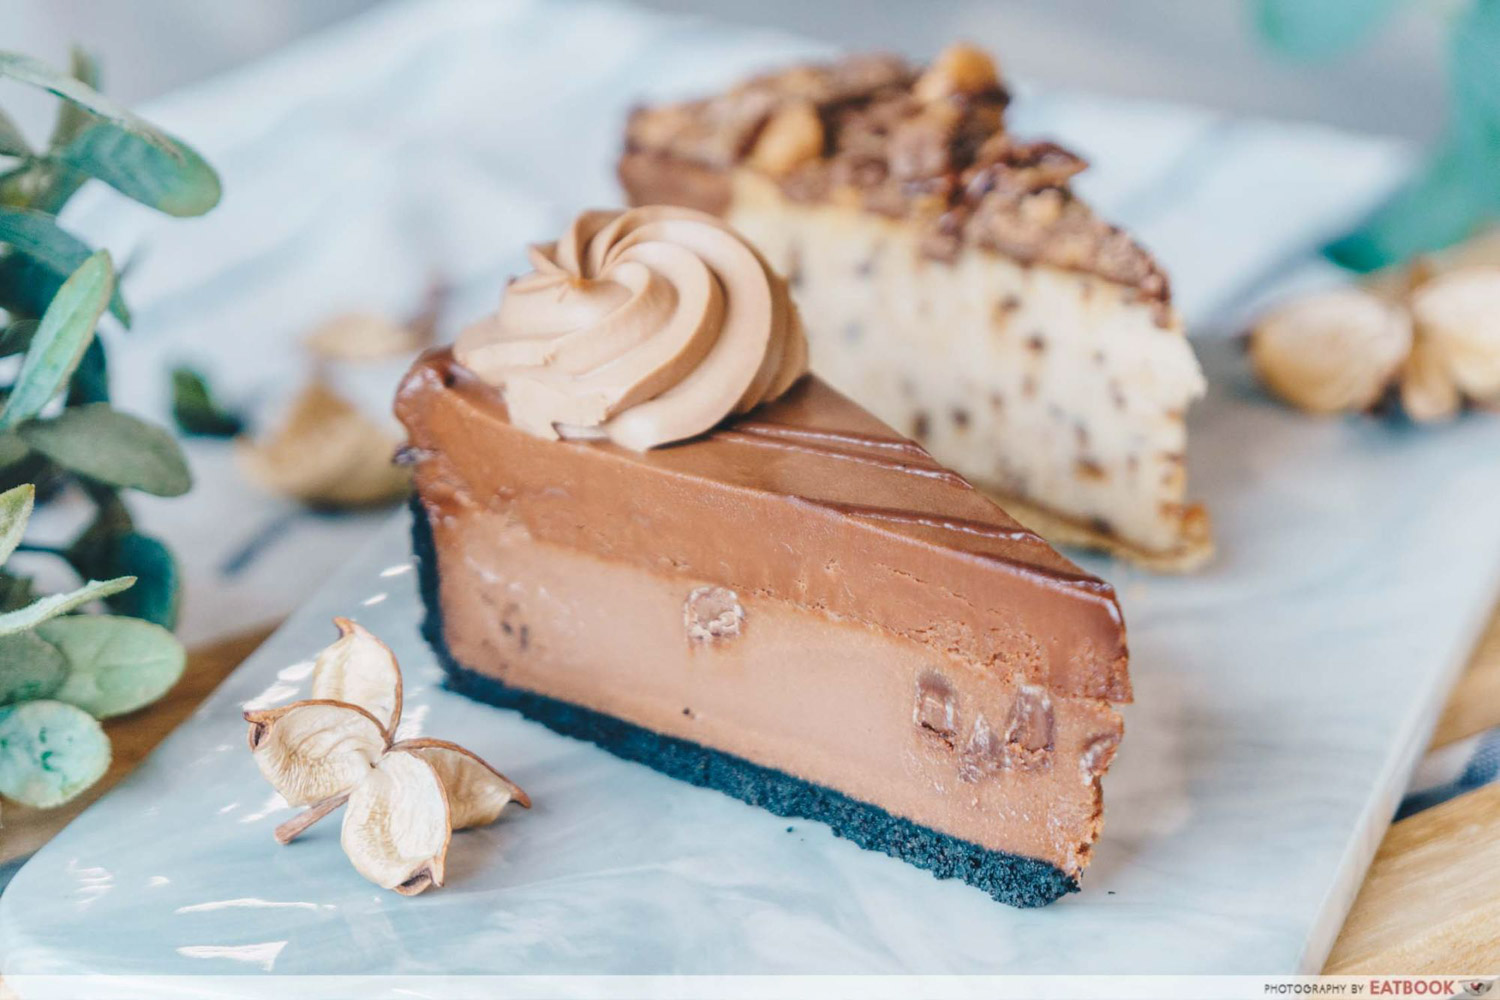 Best Dessert 2019 - Beverly Hills Cheesecake